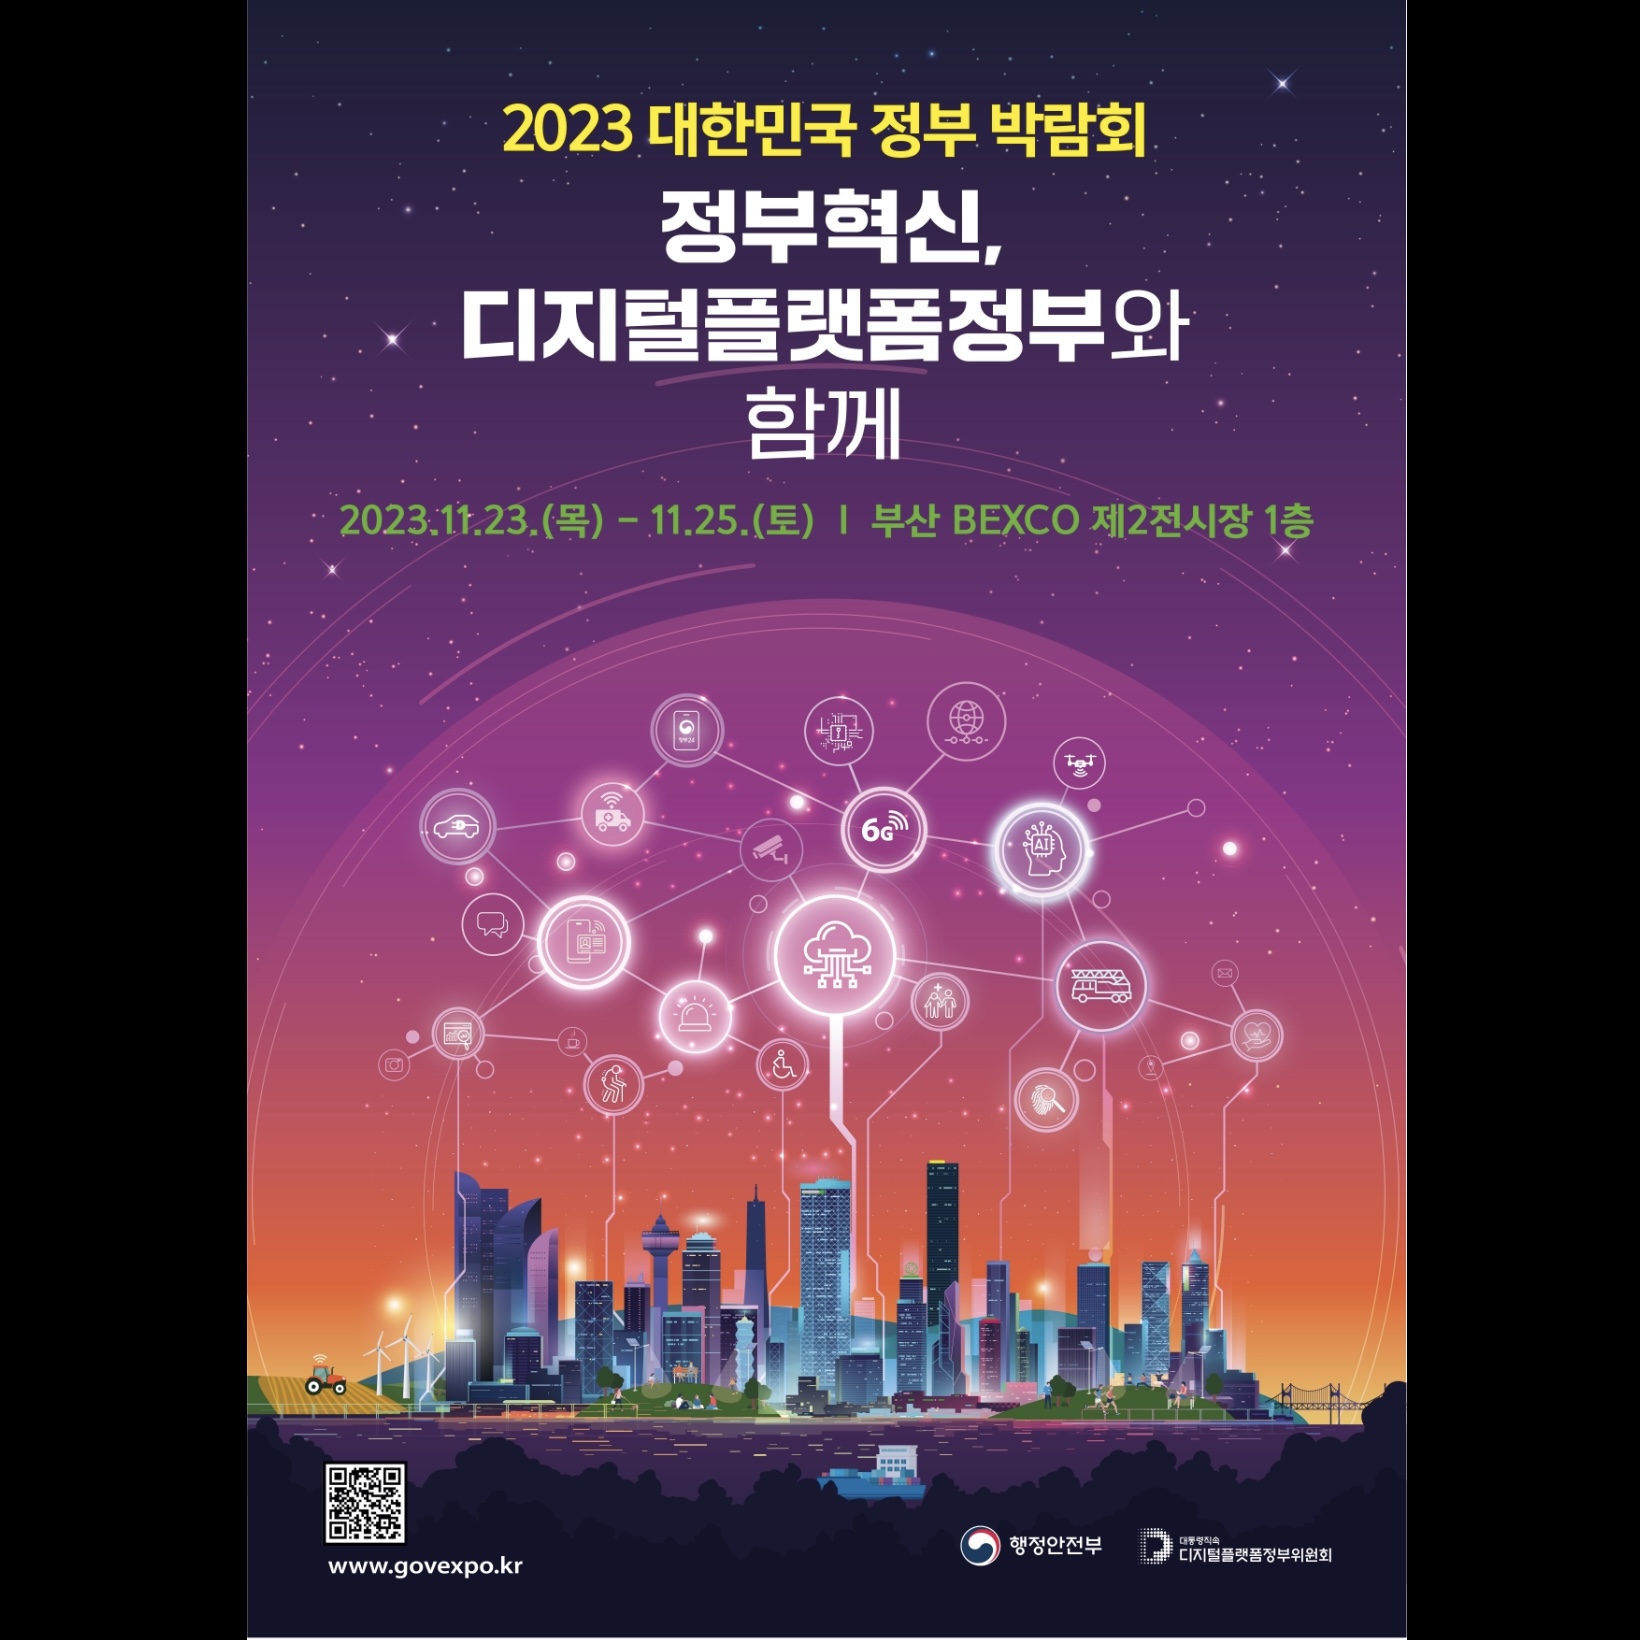 [원고료有][IT 인플루언서] 부산 2023 대한민국 정부 박람회 방문 